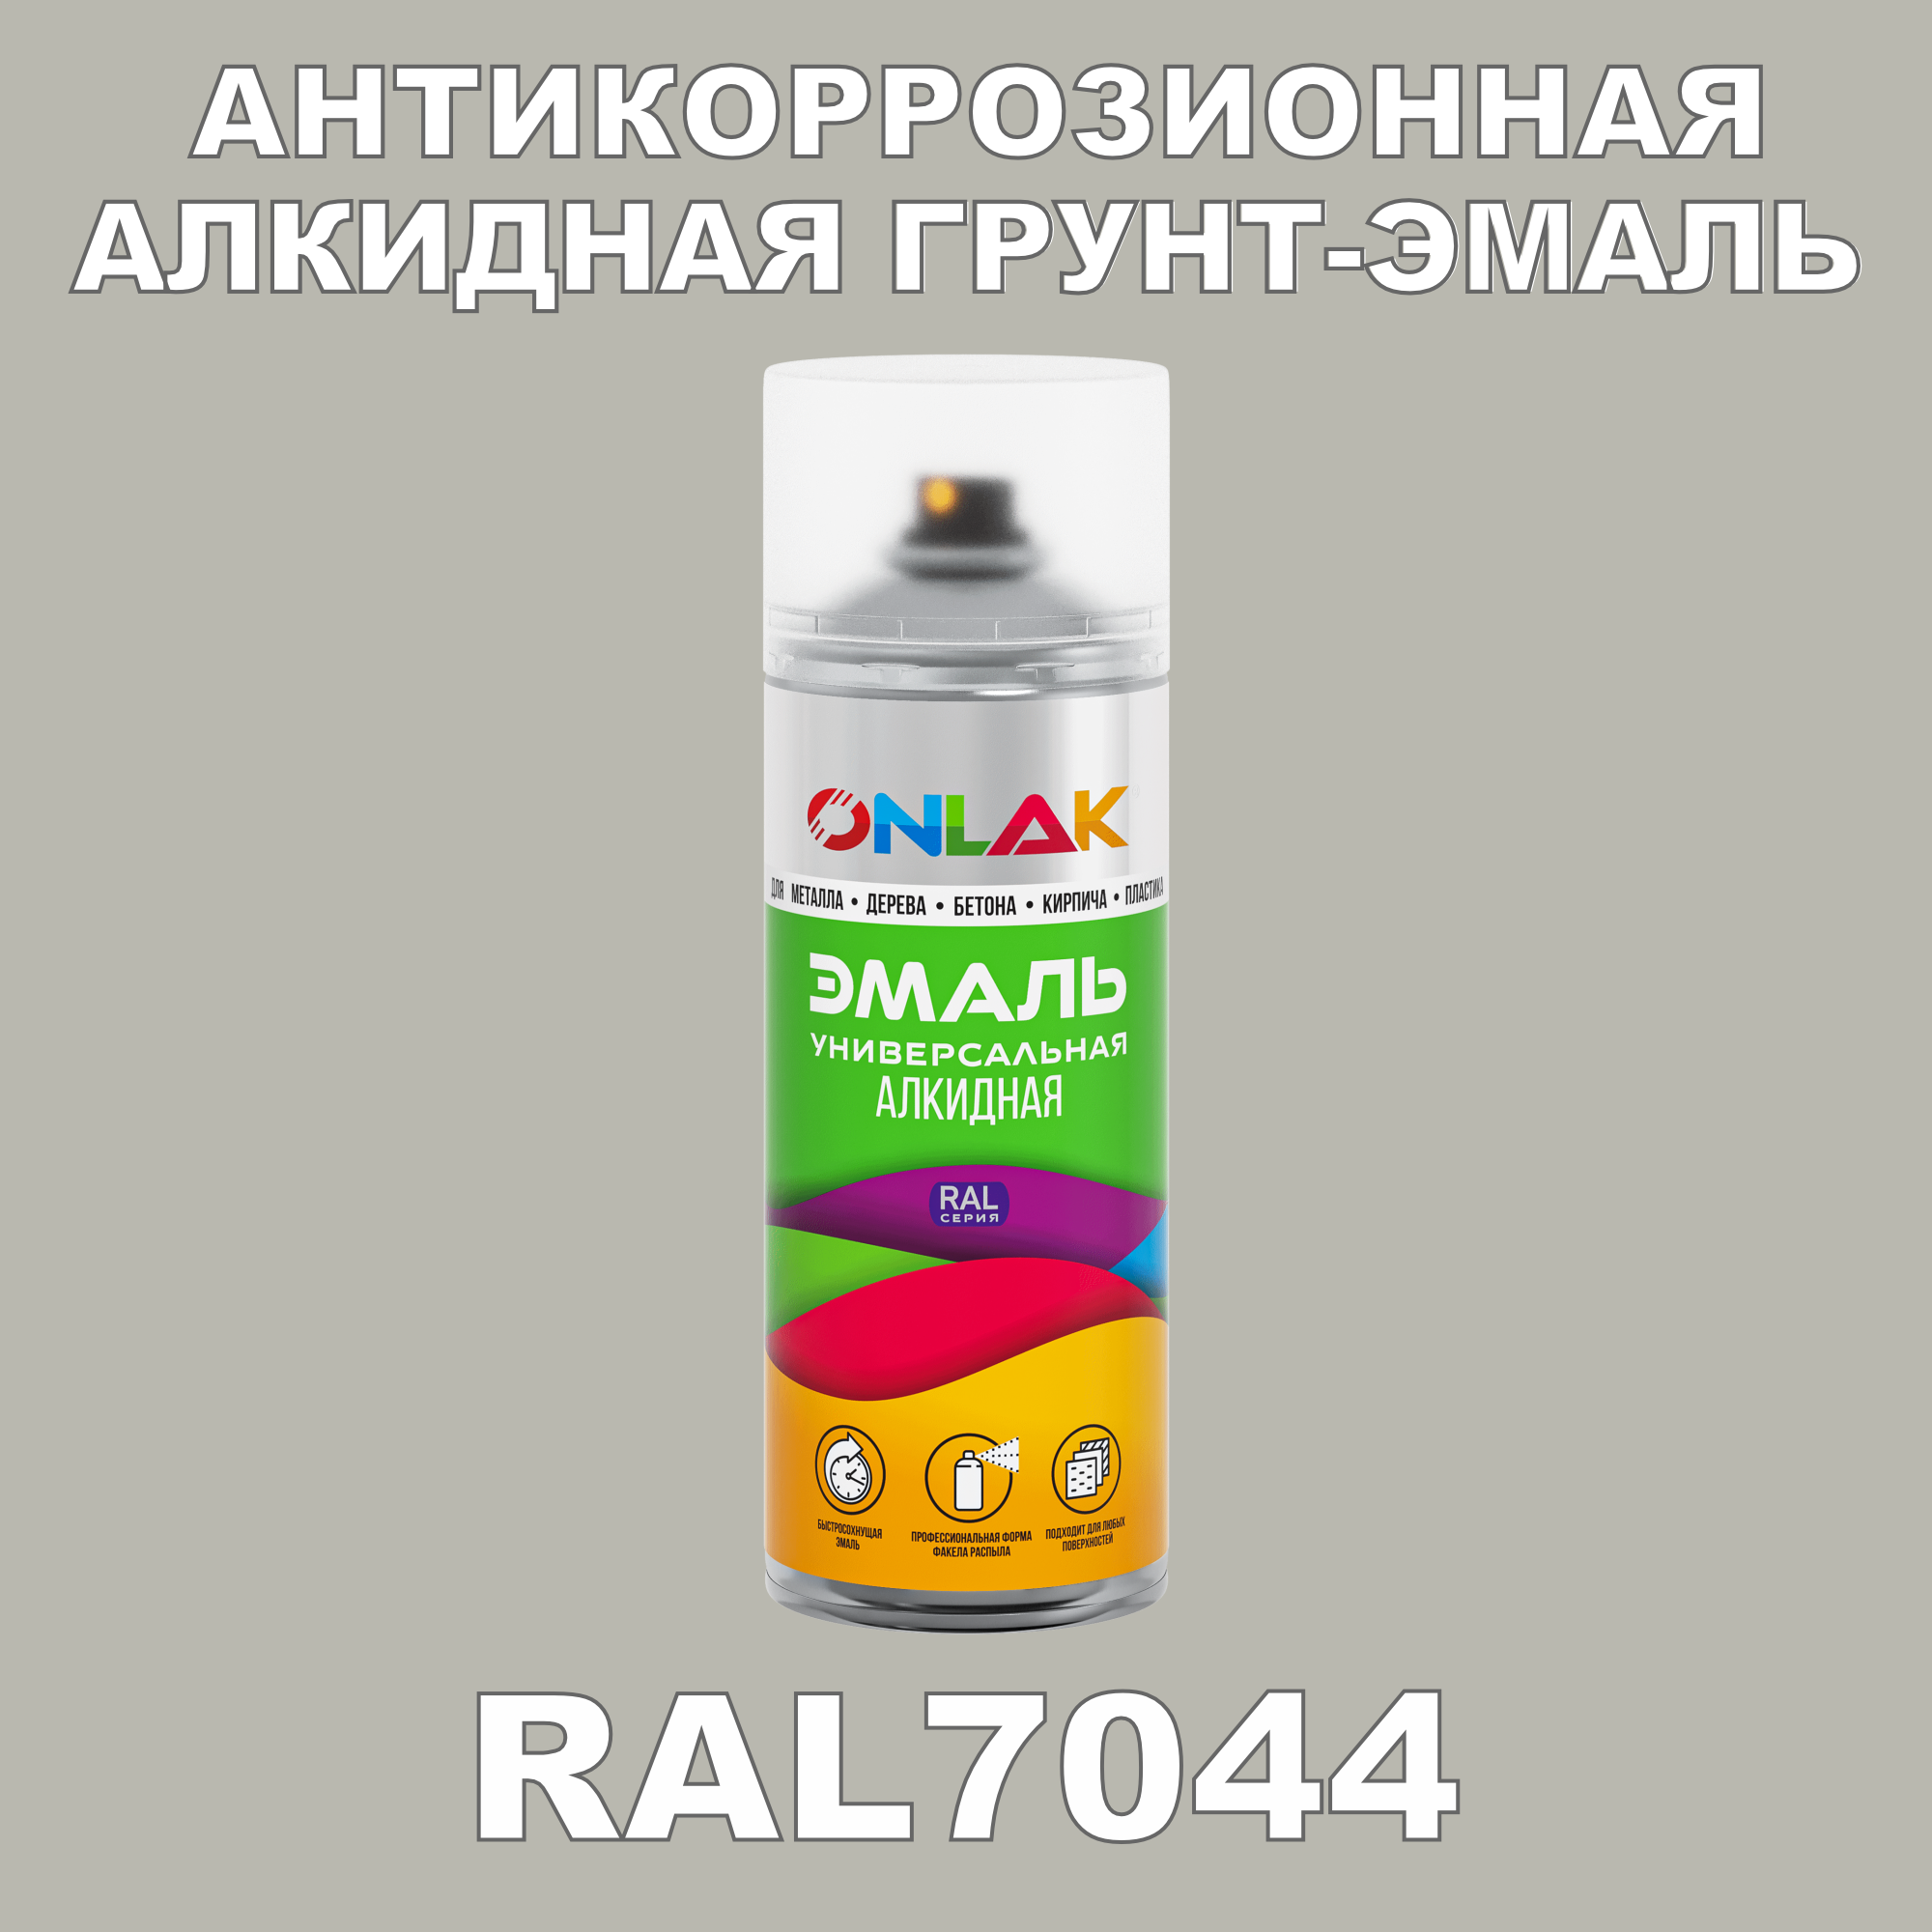 Антикоррозионная грунт-эмаль ONLAK RAL7044 полуматовая для металла и защиты от ржавчины